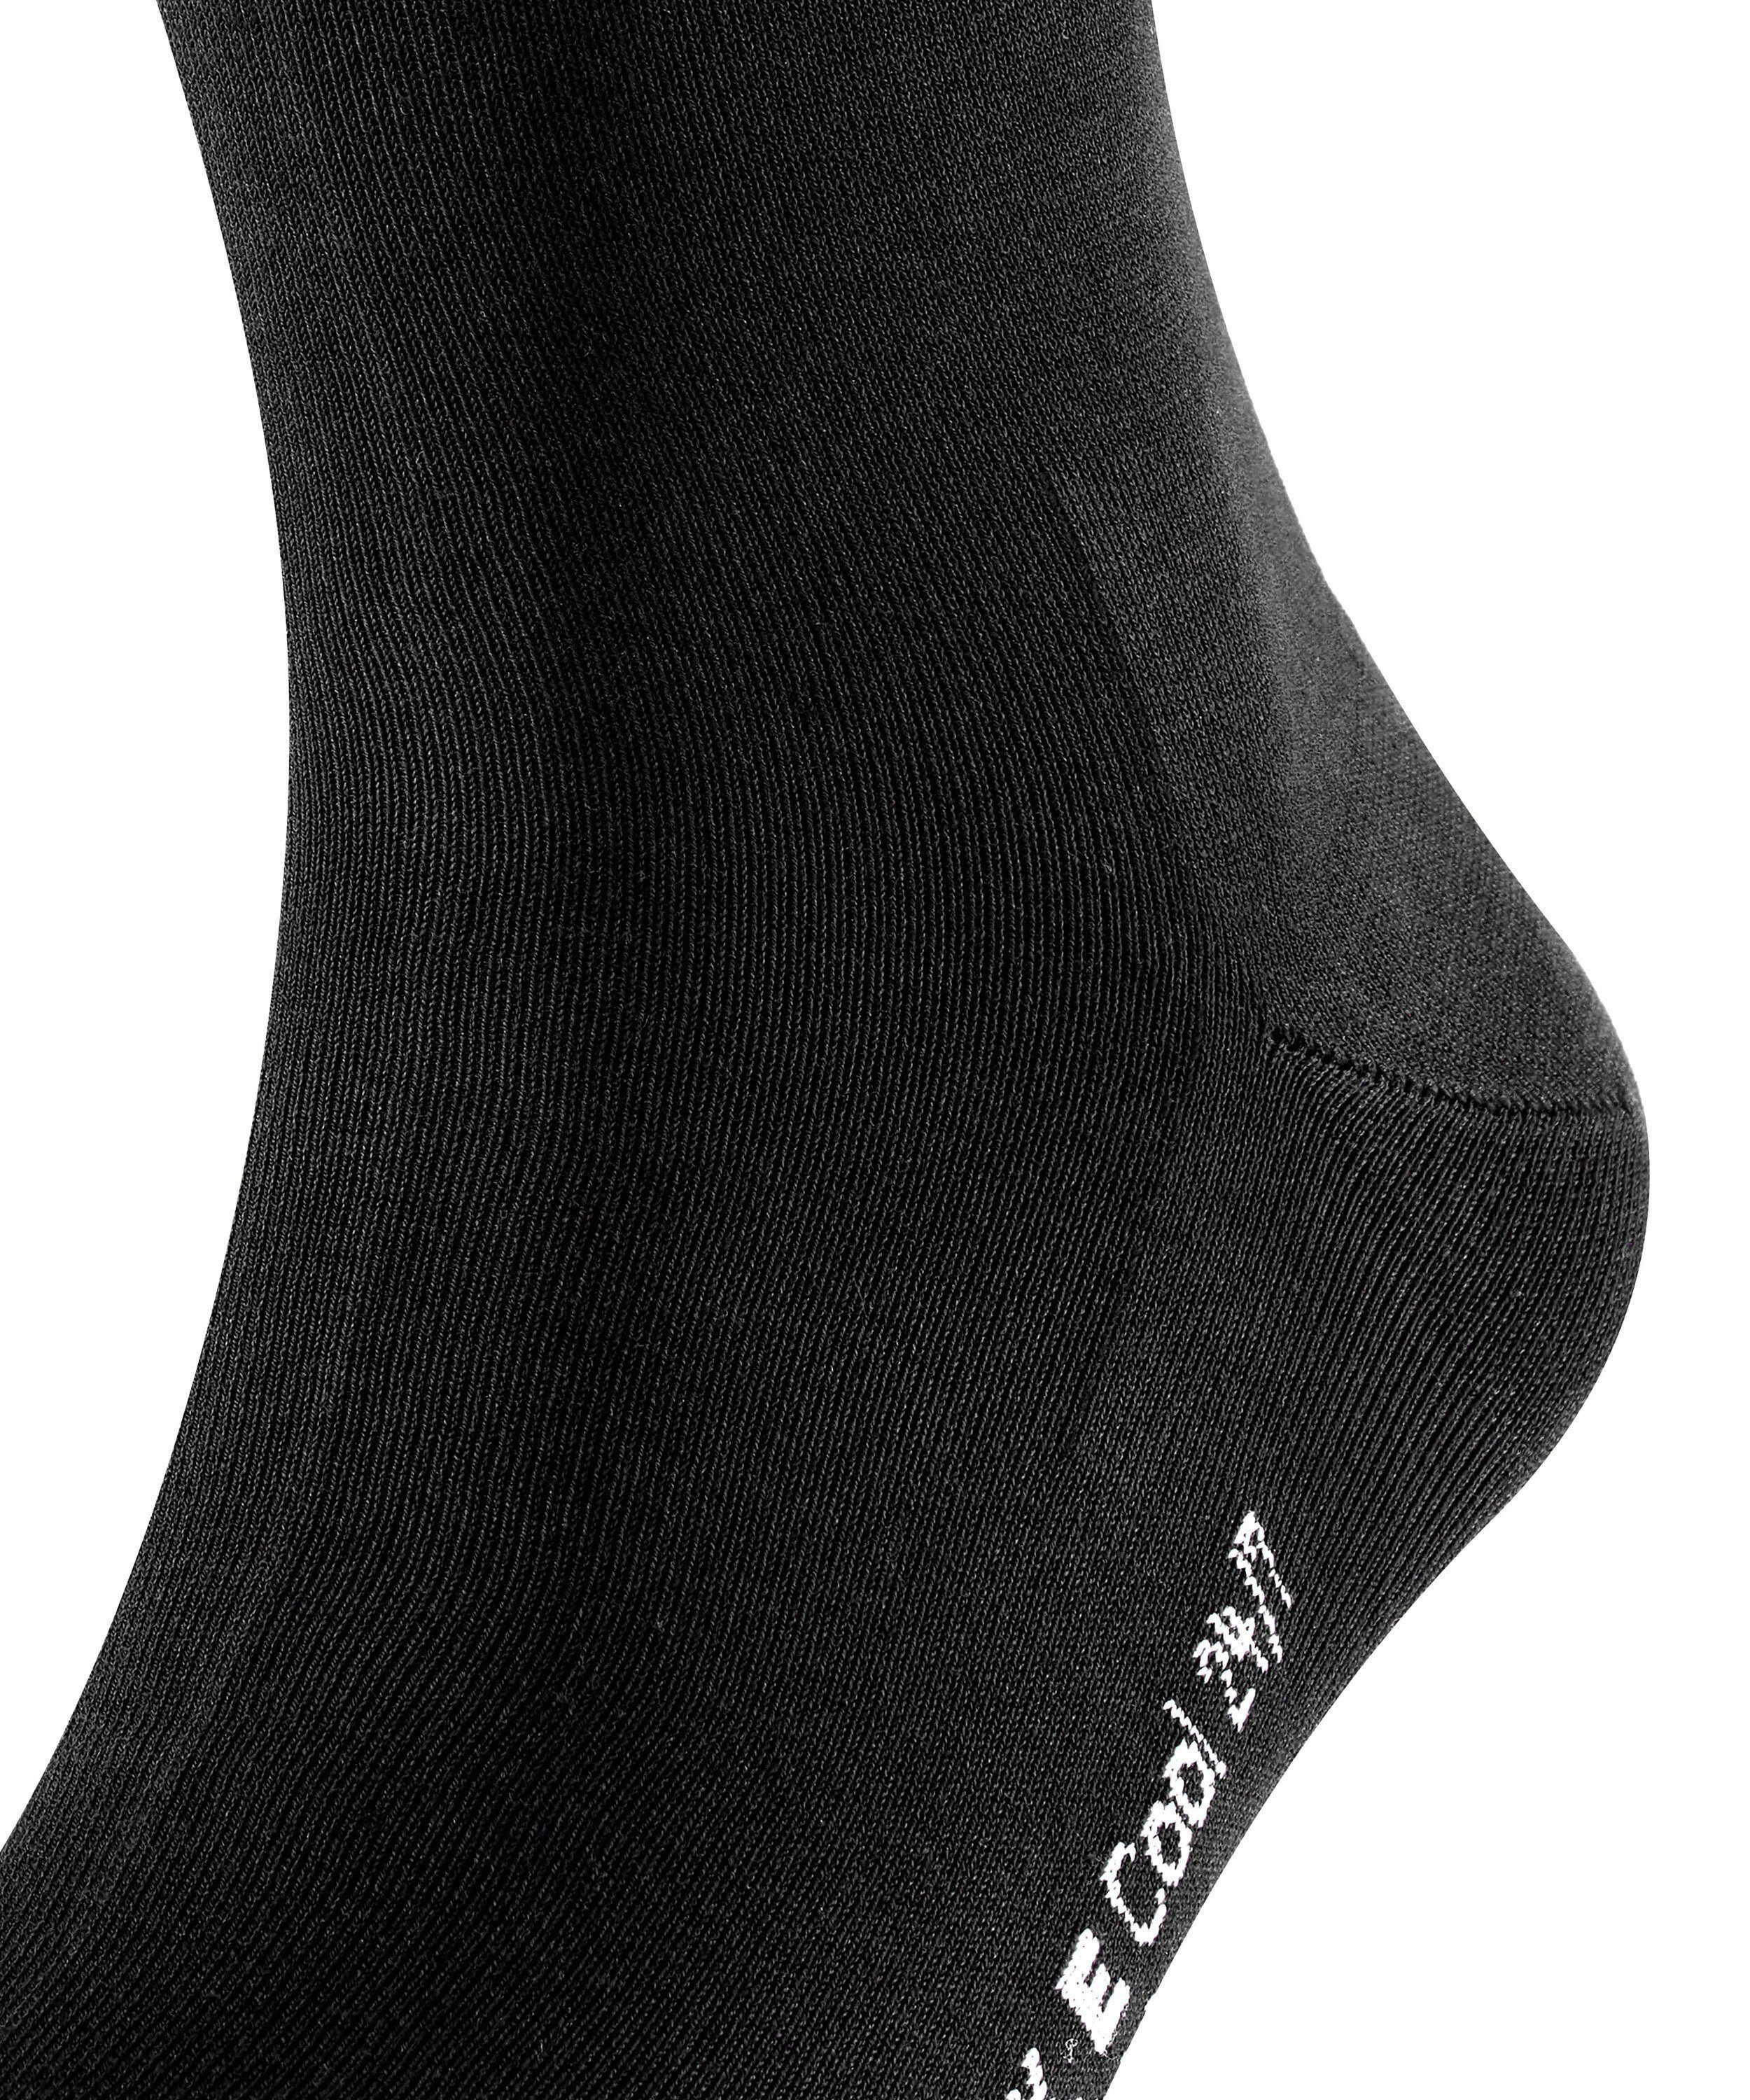 Socken Cool FALKE (3000) black (1-Paar) 24/7